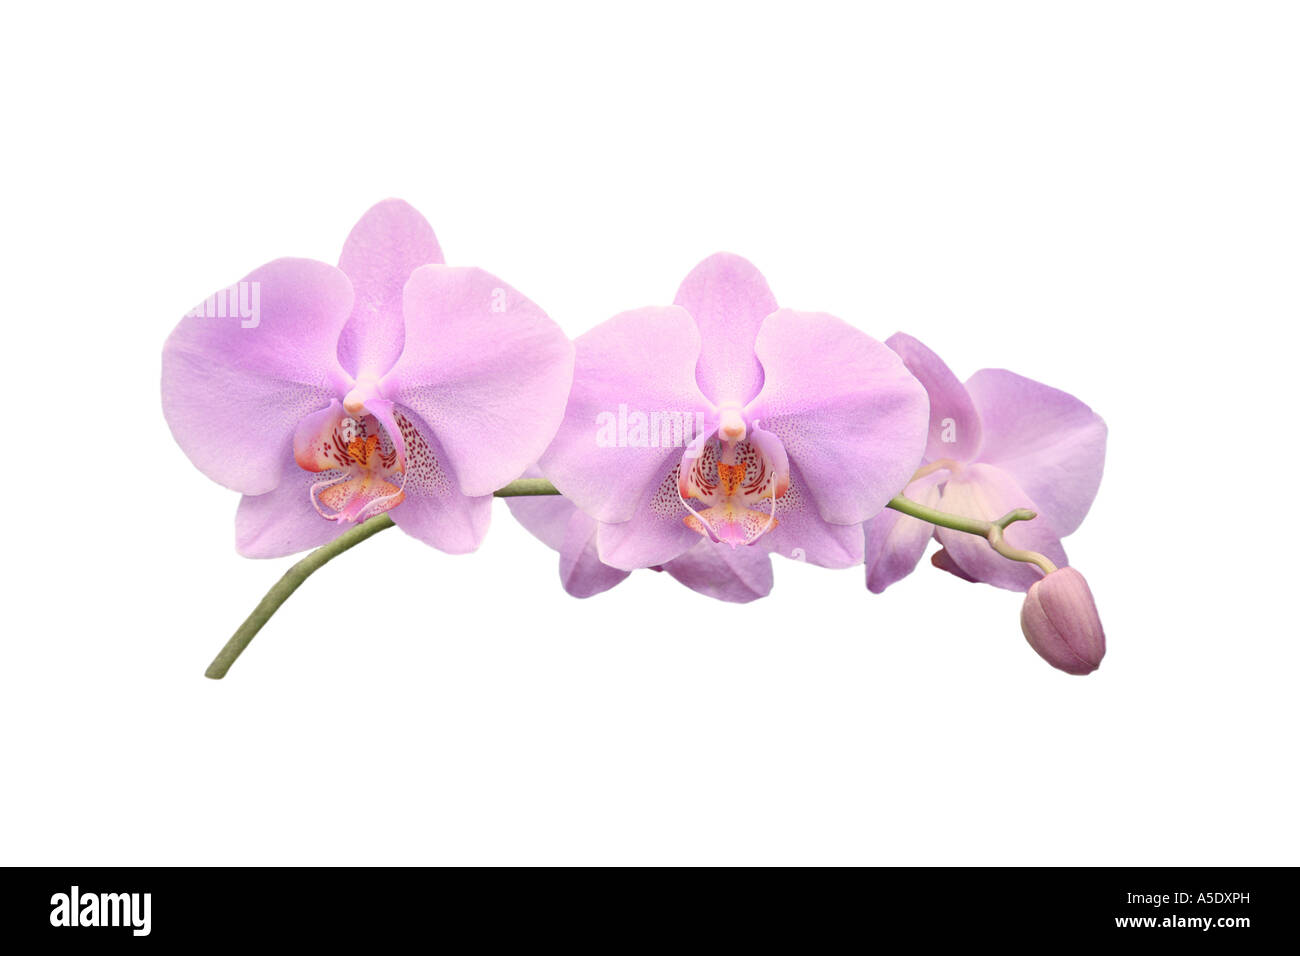 Moth orchid (Phalaenopsis ibrido), ordine di sviluppo dei Fiori, Foto serie 8/9 Foto Stock